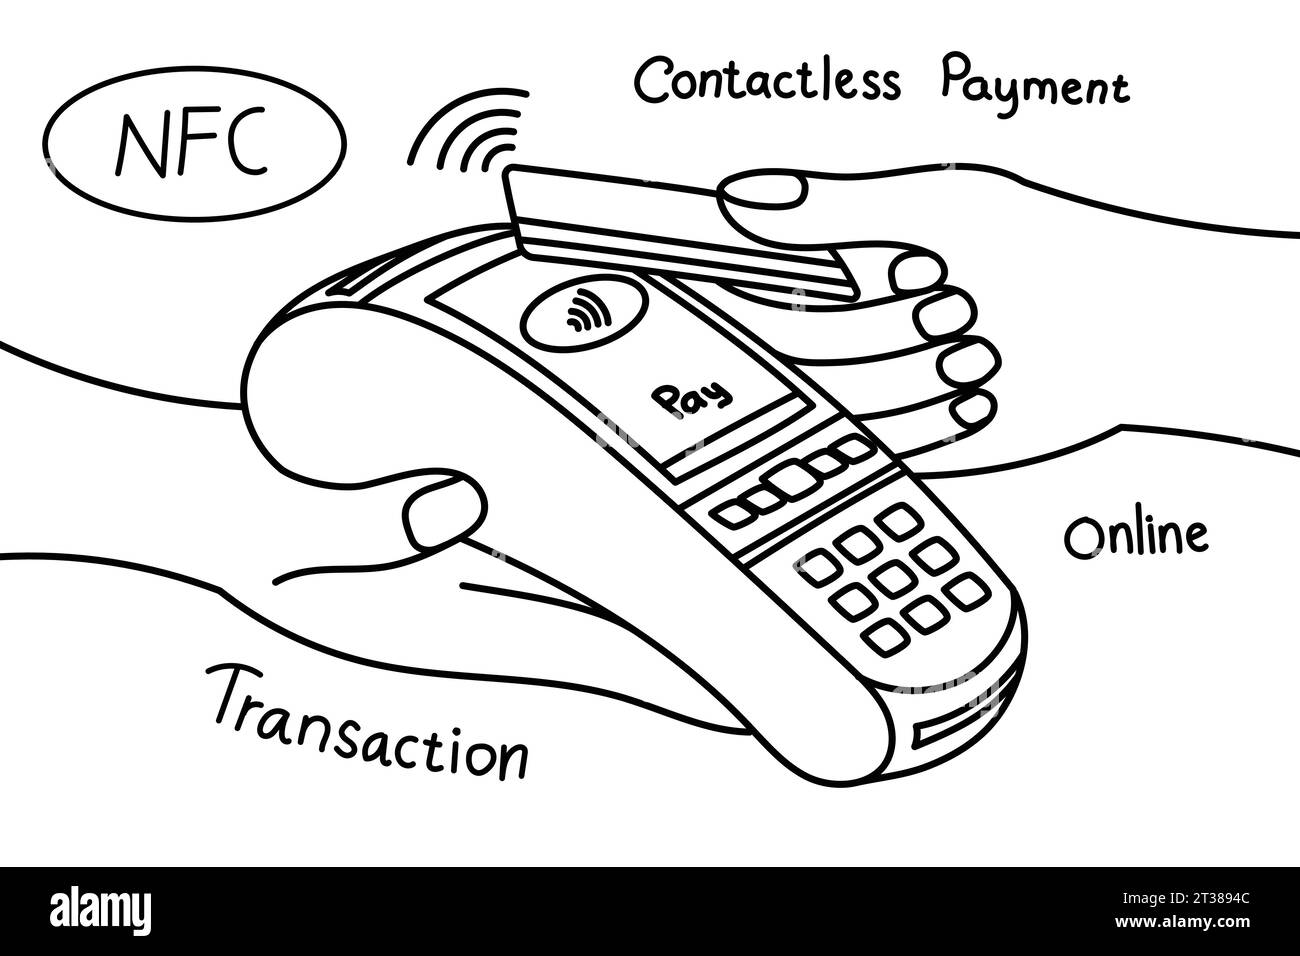 Handgezeichnete Illustration der kontaktlosen Zahlungstransaktion unter Verwendung des Kreditkartenkonturvektors Stock Vektor